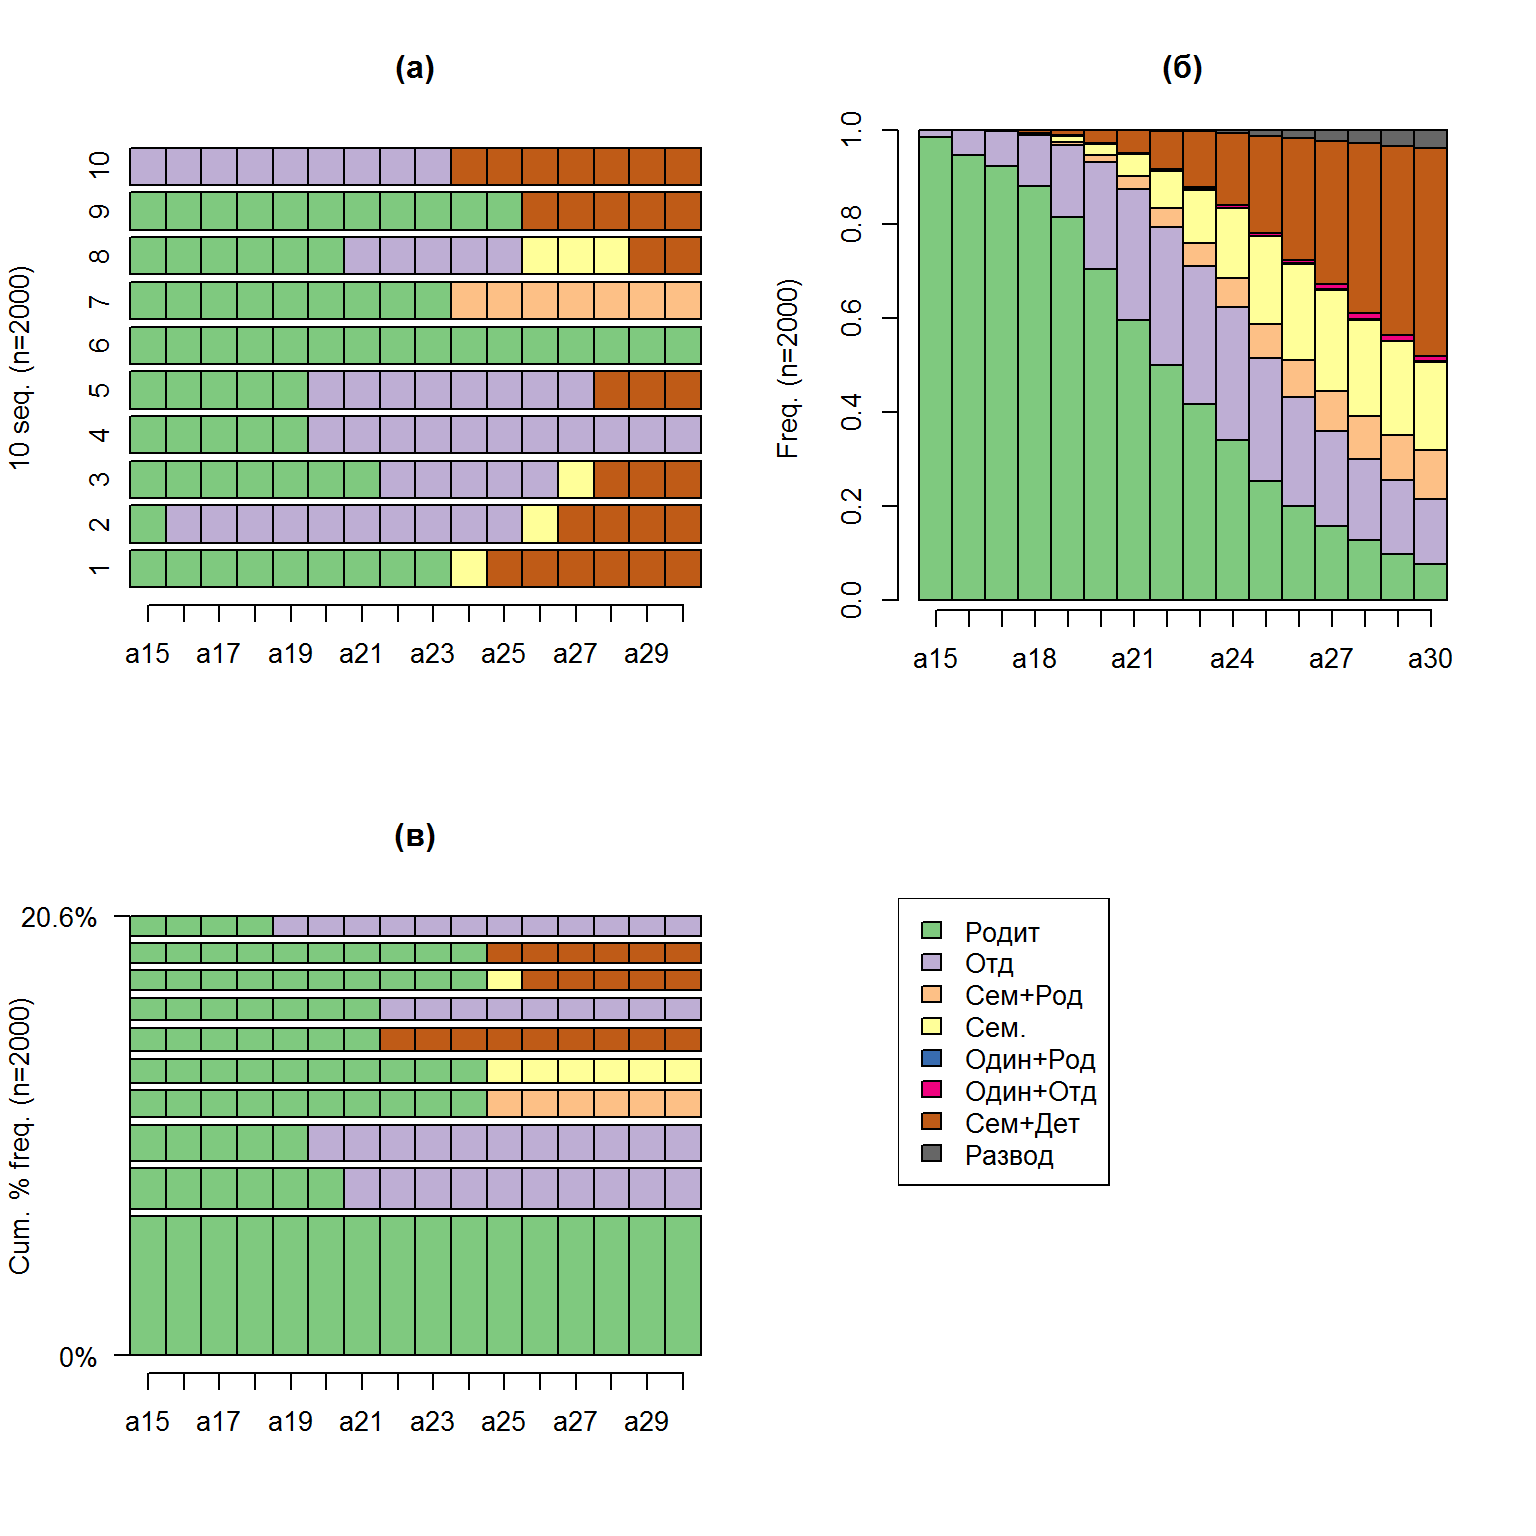 Визуализация 10 первых (а), наиболее часто встречающихся последовательностей (б), и график частотного распределения градаций (в)